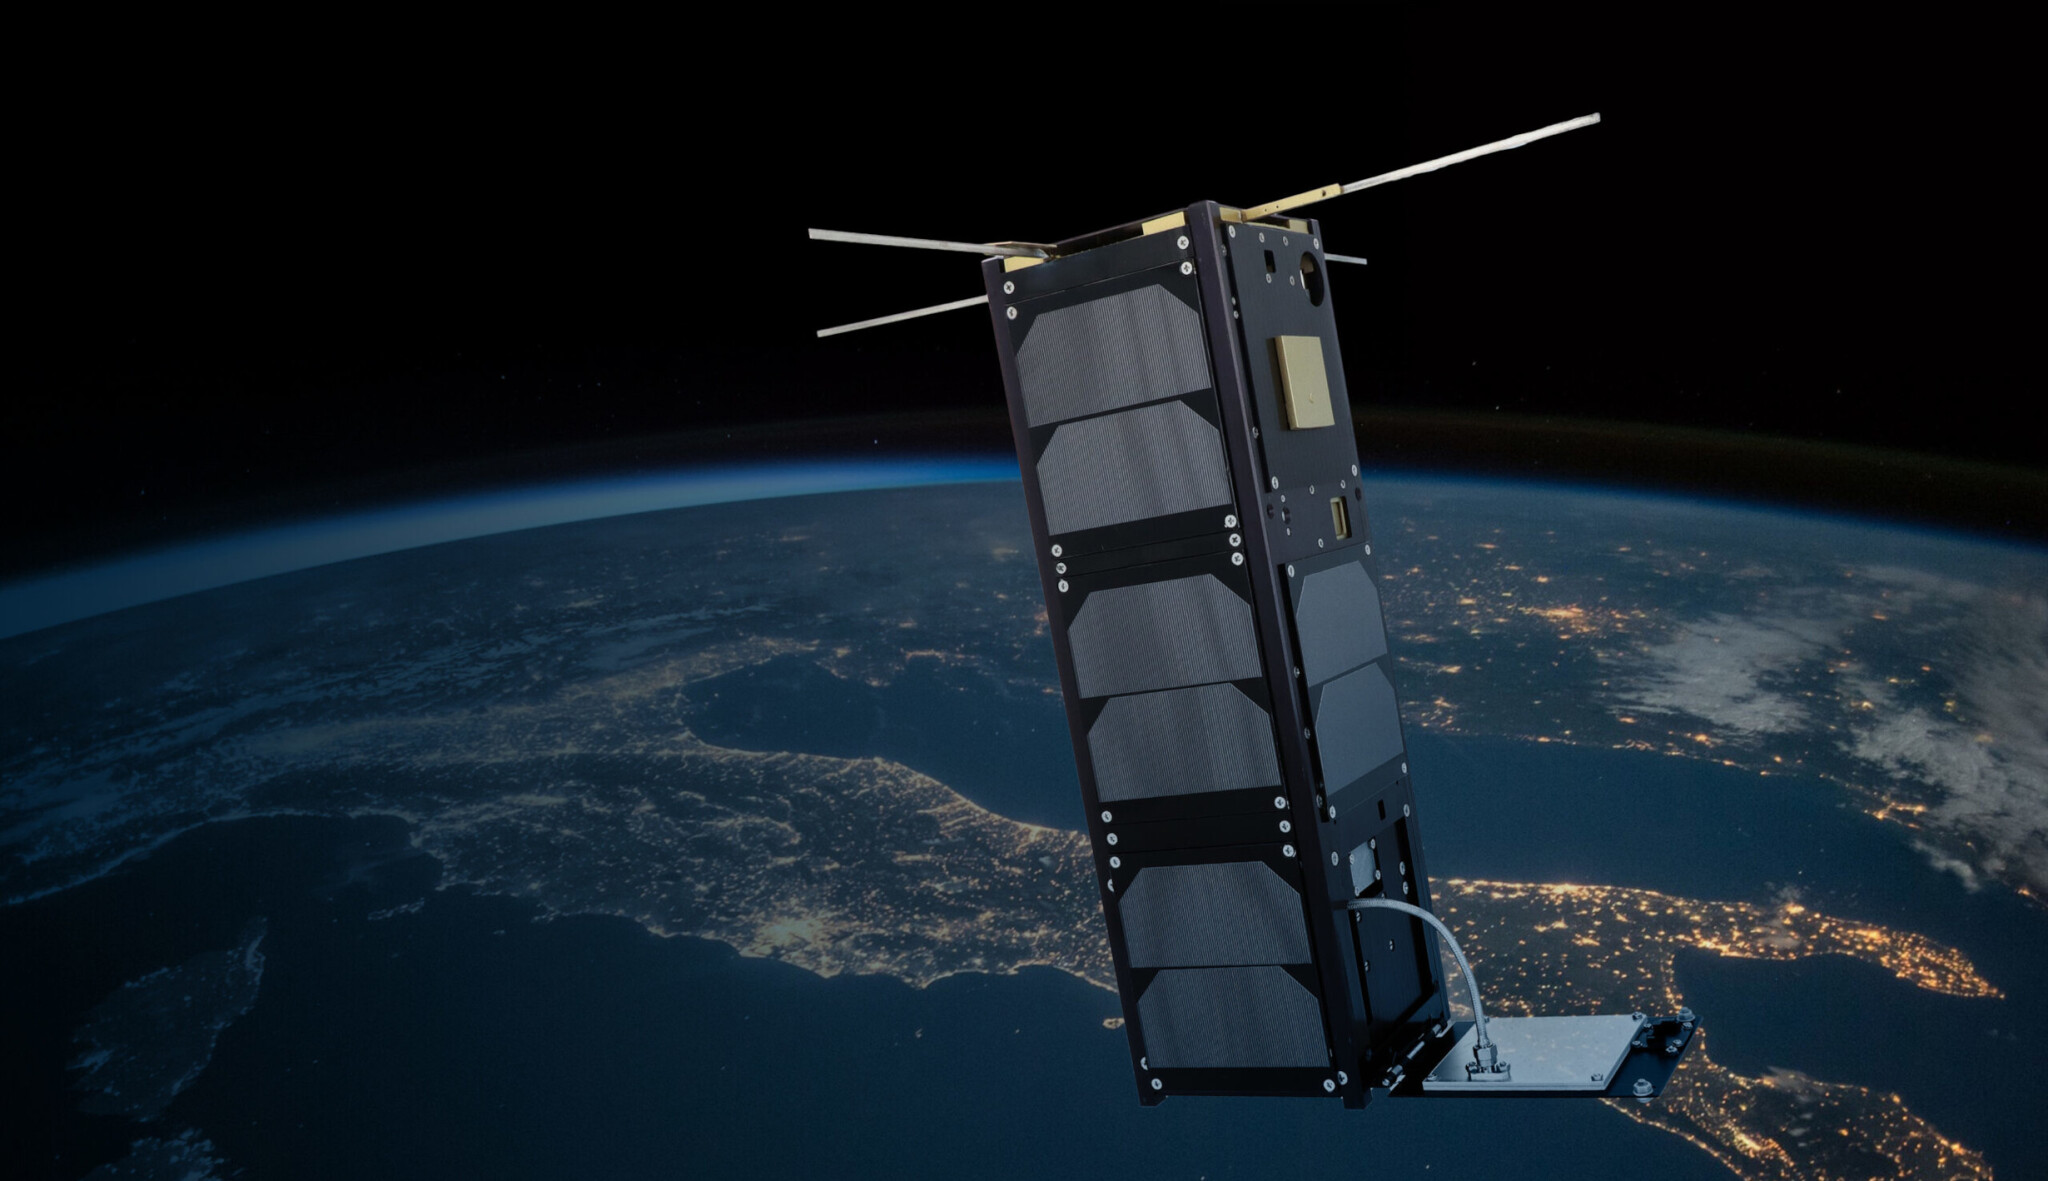 Česká družice VZLUSAT-2 je v kosmu. Vynesla ji tam raketa Falcon 9 společnosti SpaceX